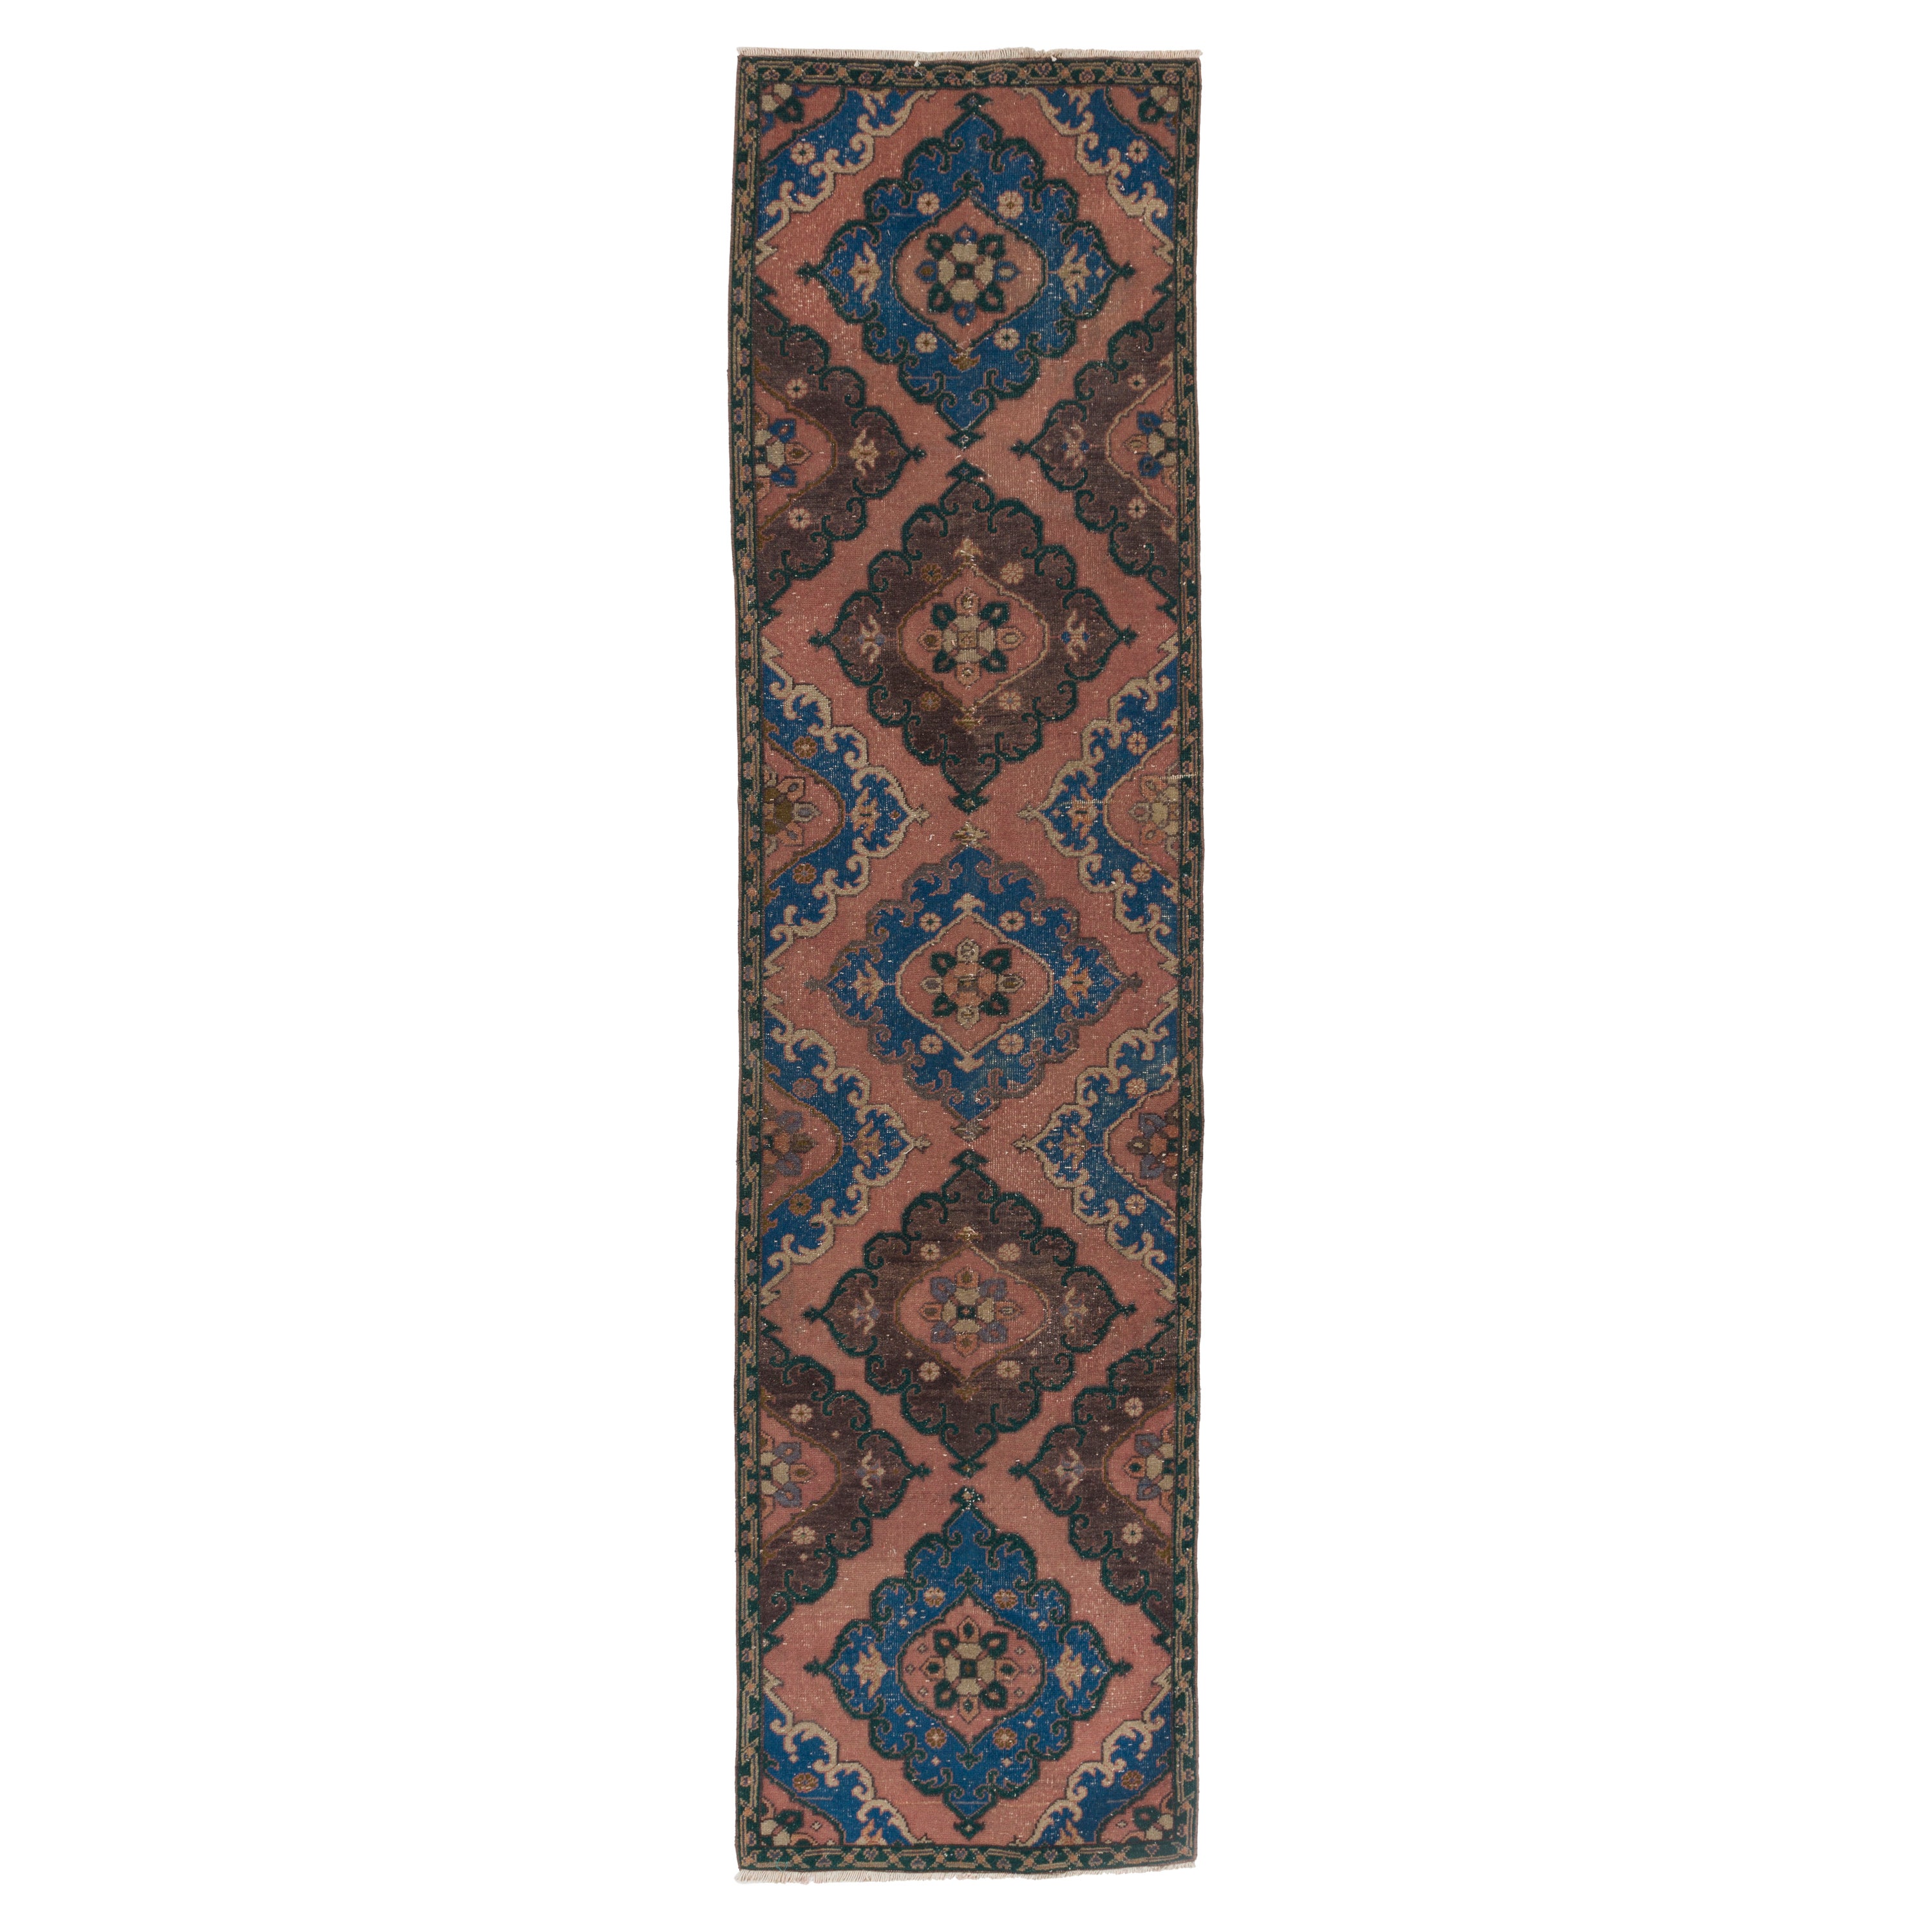 3x12 Ft Handmade Runner Rug, Vintage Oriental Carpet in Maroon Red, Blue en vente